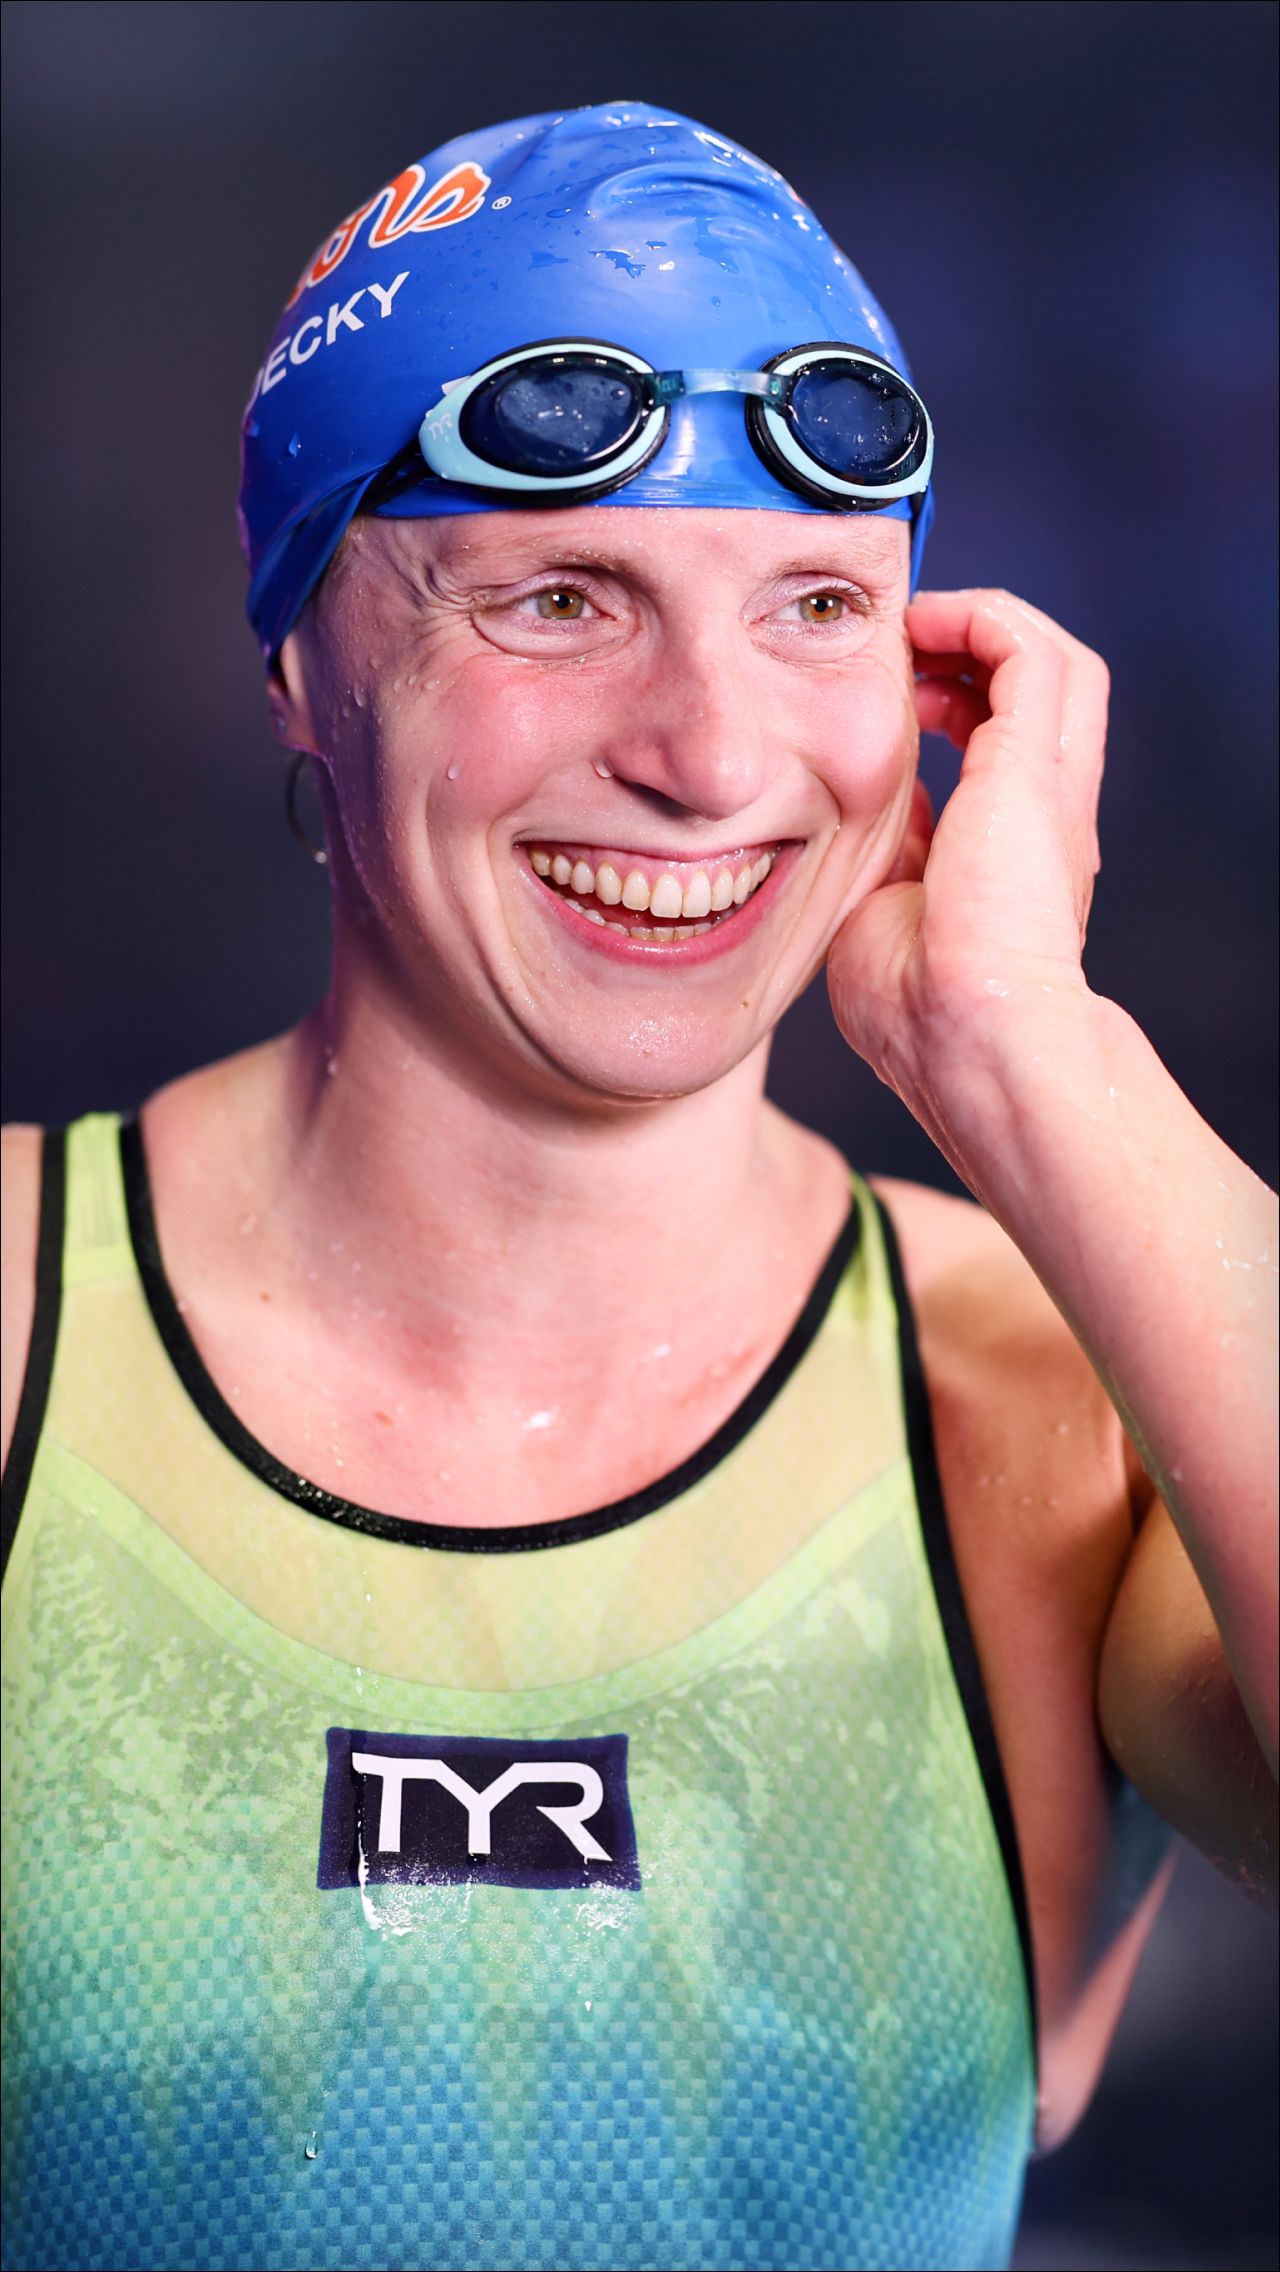 Американка Кэти Ледеки к 26 годам выиграла всё – семь титулов на Олимпиаде, 19 – на чемпионатах мира. В Фукуоке наверняка попробует побить мировой рекорд на 800 м вольным стилем.